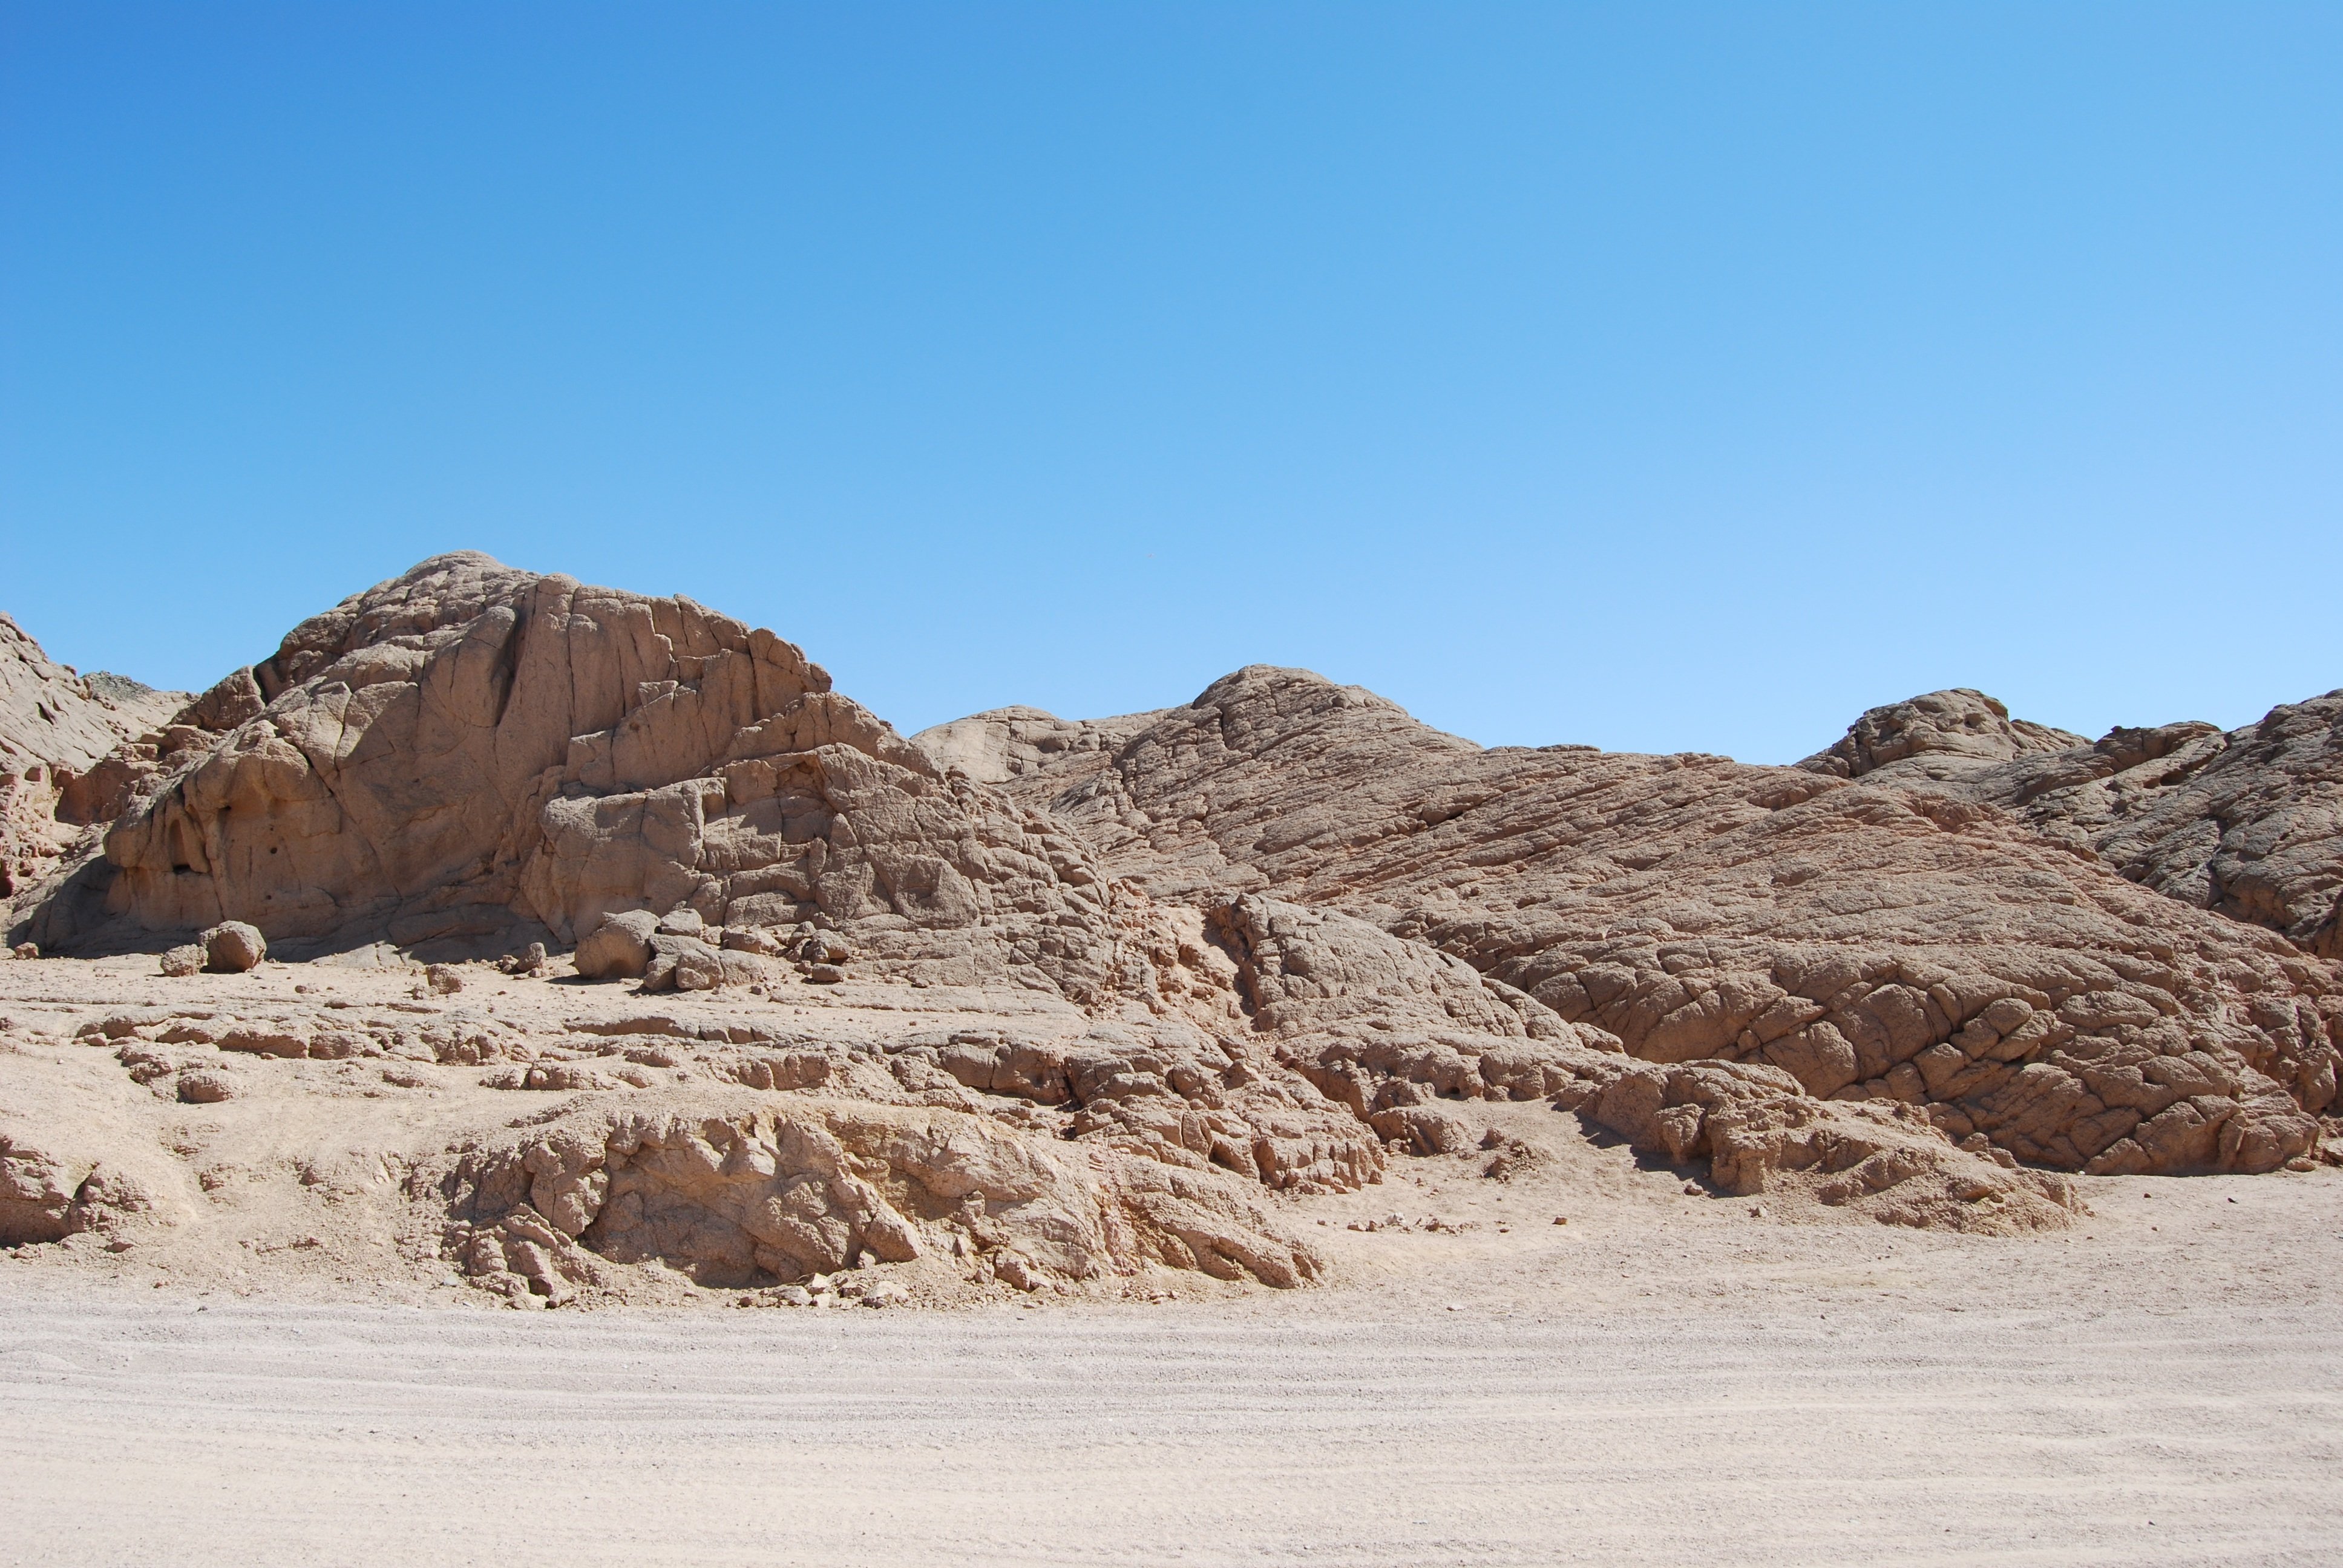 Stone scene. Аравийская пустыня скалы. Каменная пустыня Оман. Песчаные скалы. Песчано-галечные пустыни.